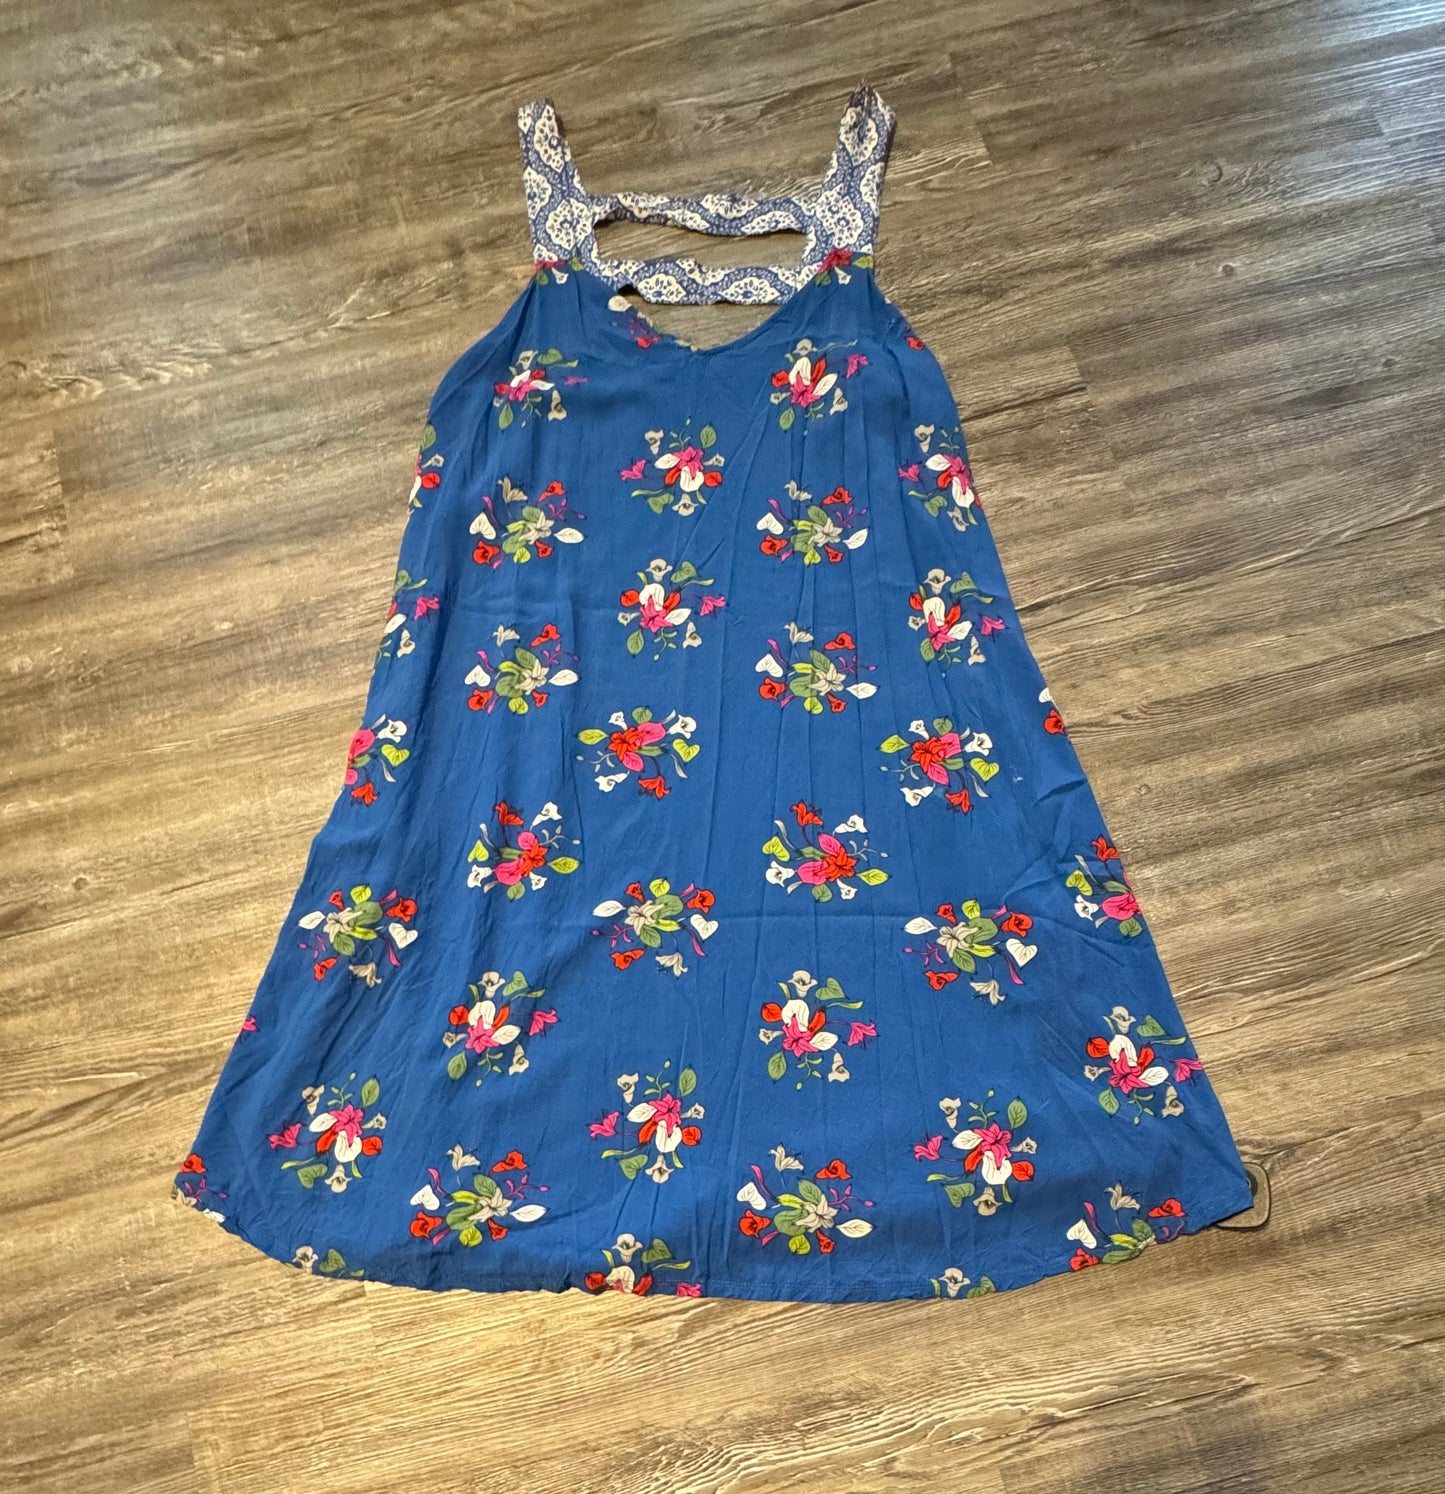 Dress Casual Maxi By Matilda Jane  Size: Xxl